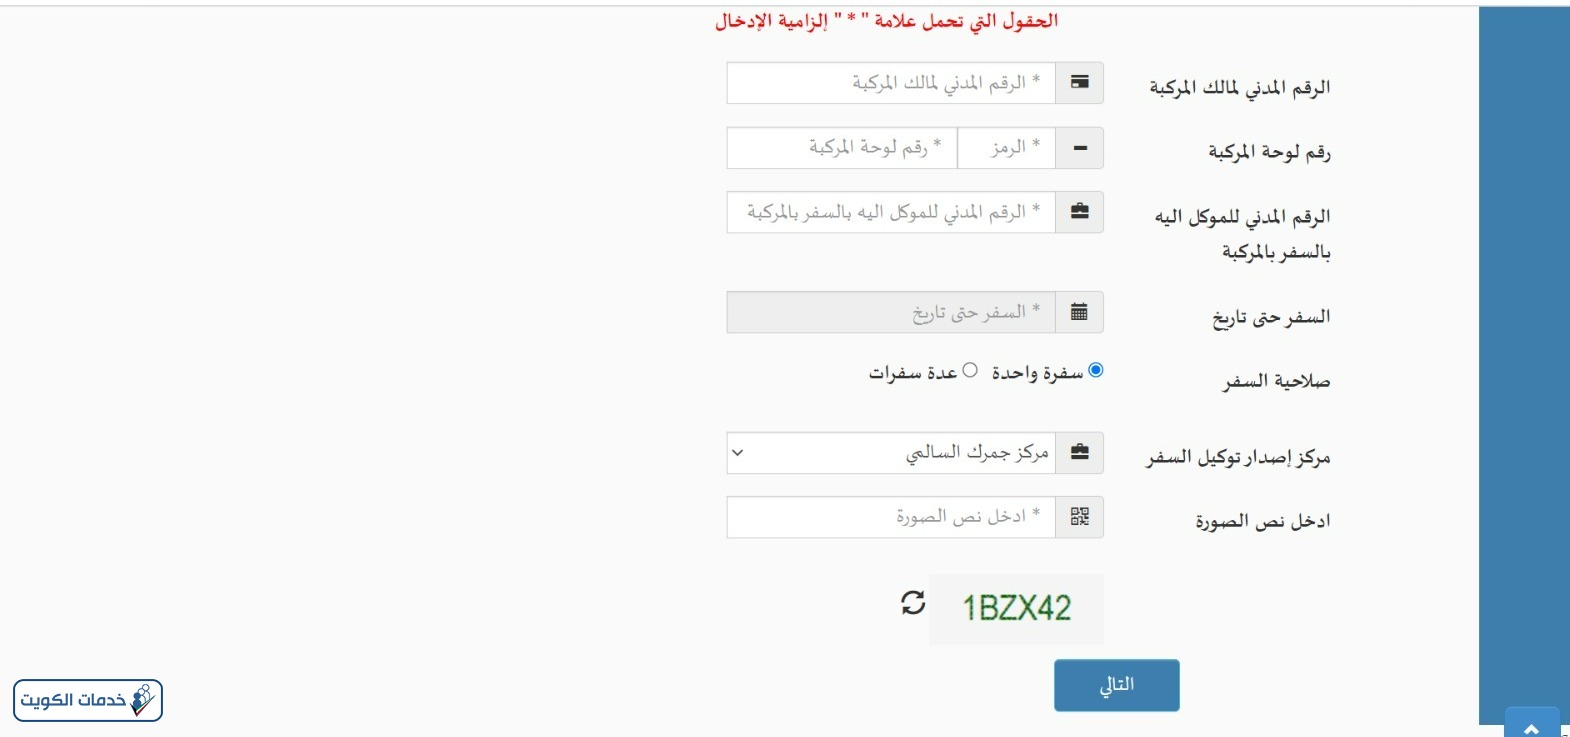 خطوات اصدار توكيل سفر بالسيارة الكويت الجمارك